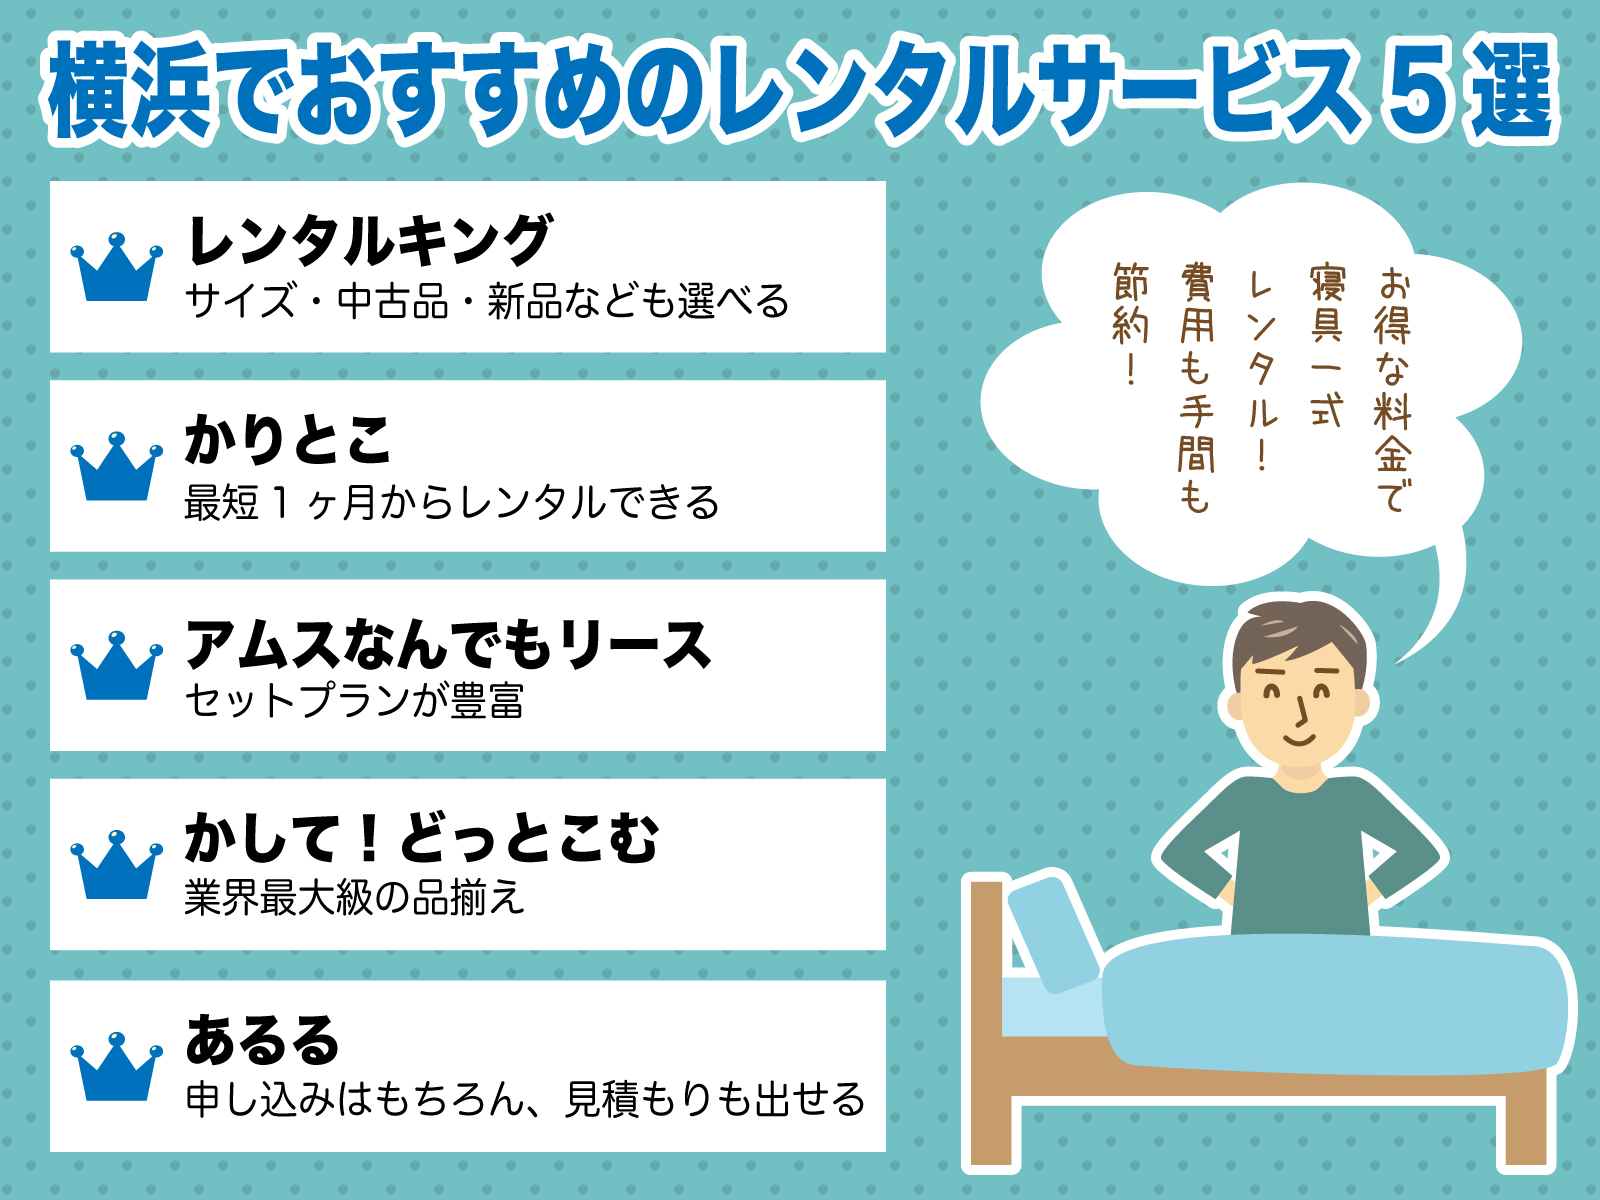 横浜でベッドをレンタルできるおすすめのレンタルサービス5選 家具 家電レンタル比較ナビ